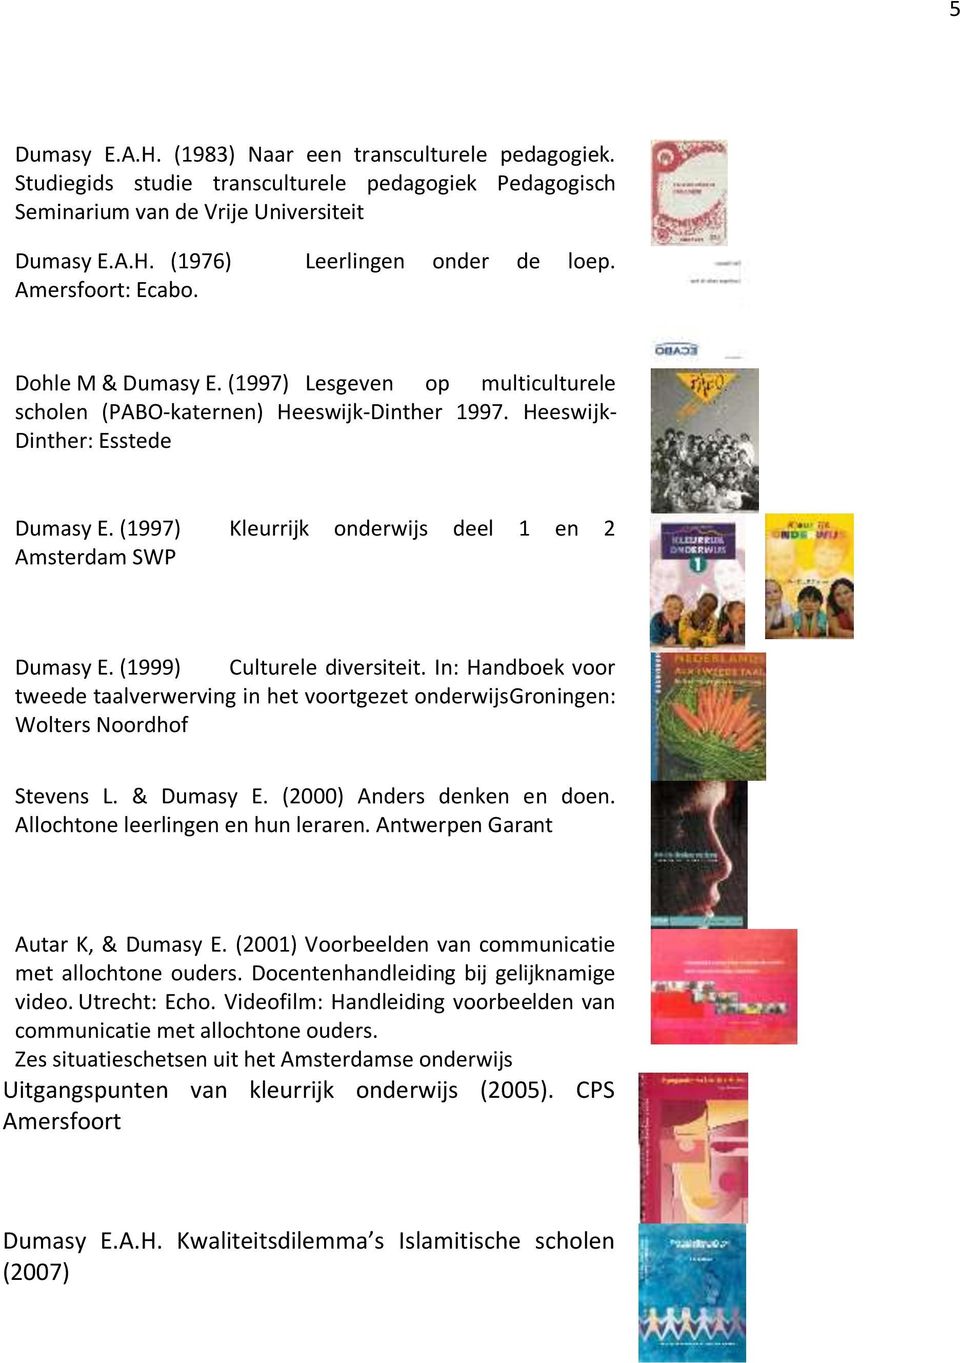 (1997) Kleurrijk onderwijs deel 1 en 2 Amsterdam SWP Dumasy E. (1999) Culturele diversiteit. In: Handboek voor tweede taalverwerving in het voortgezet onderwijsgroningen: Wolters Noordhof Stevens L.